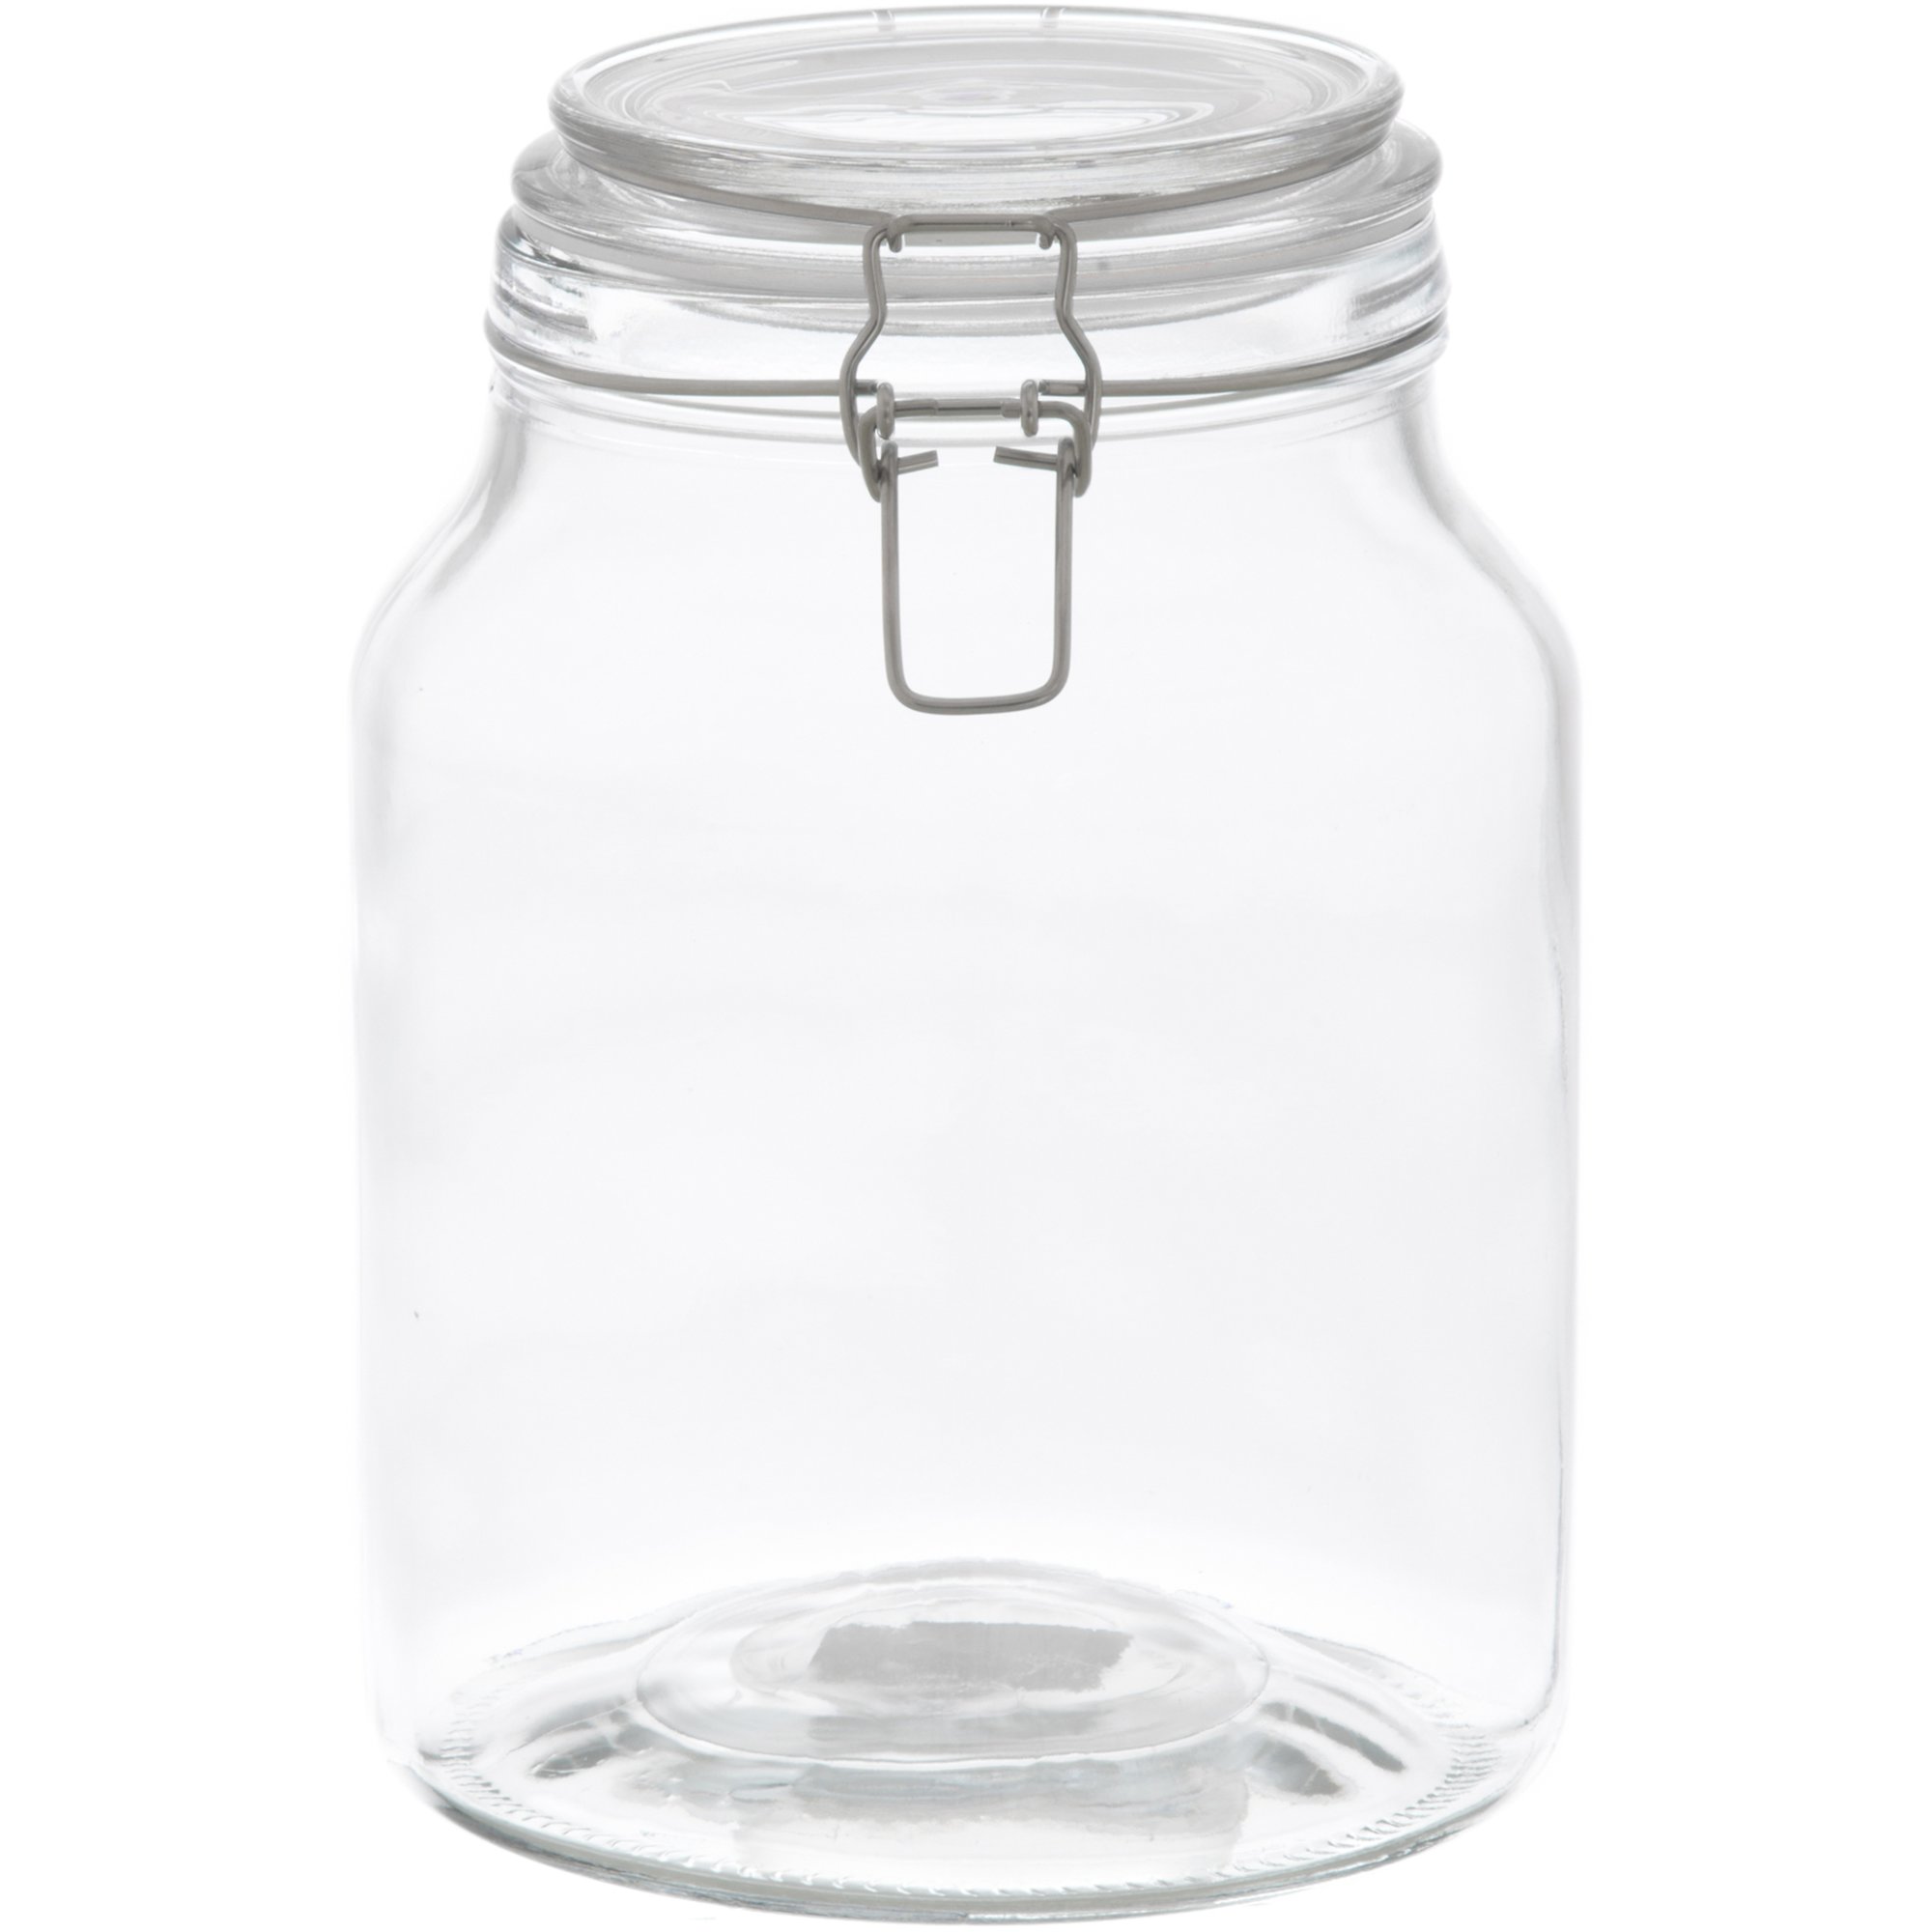 Marjukka Glasskrukke med patentlokk 3 liter